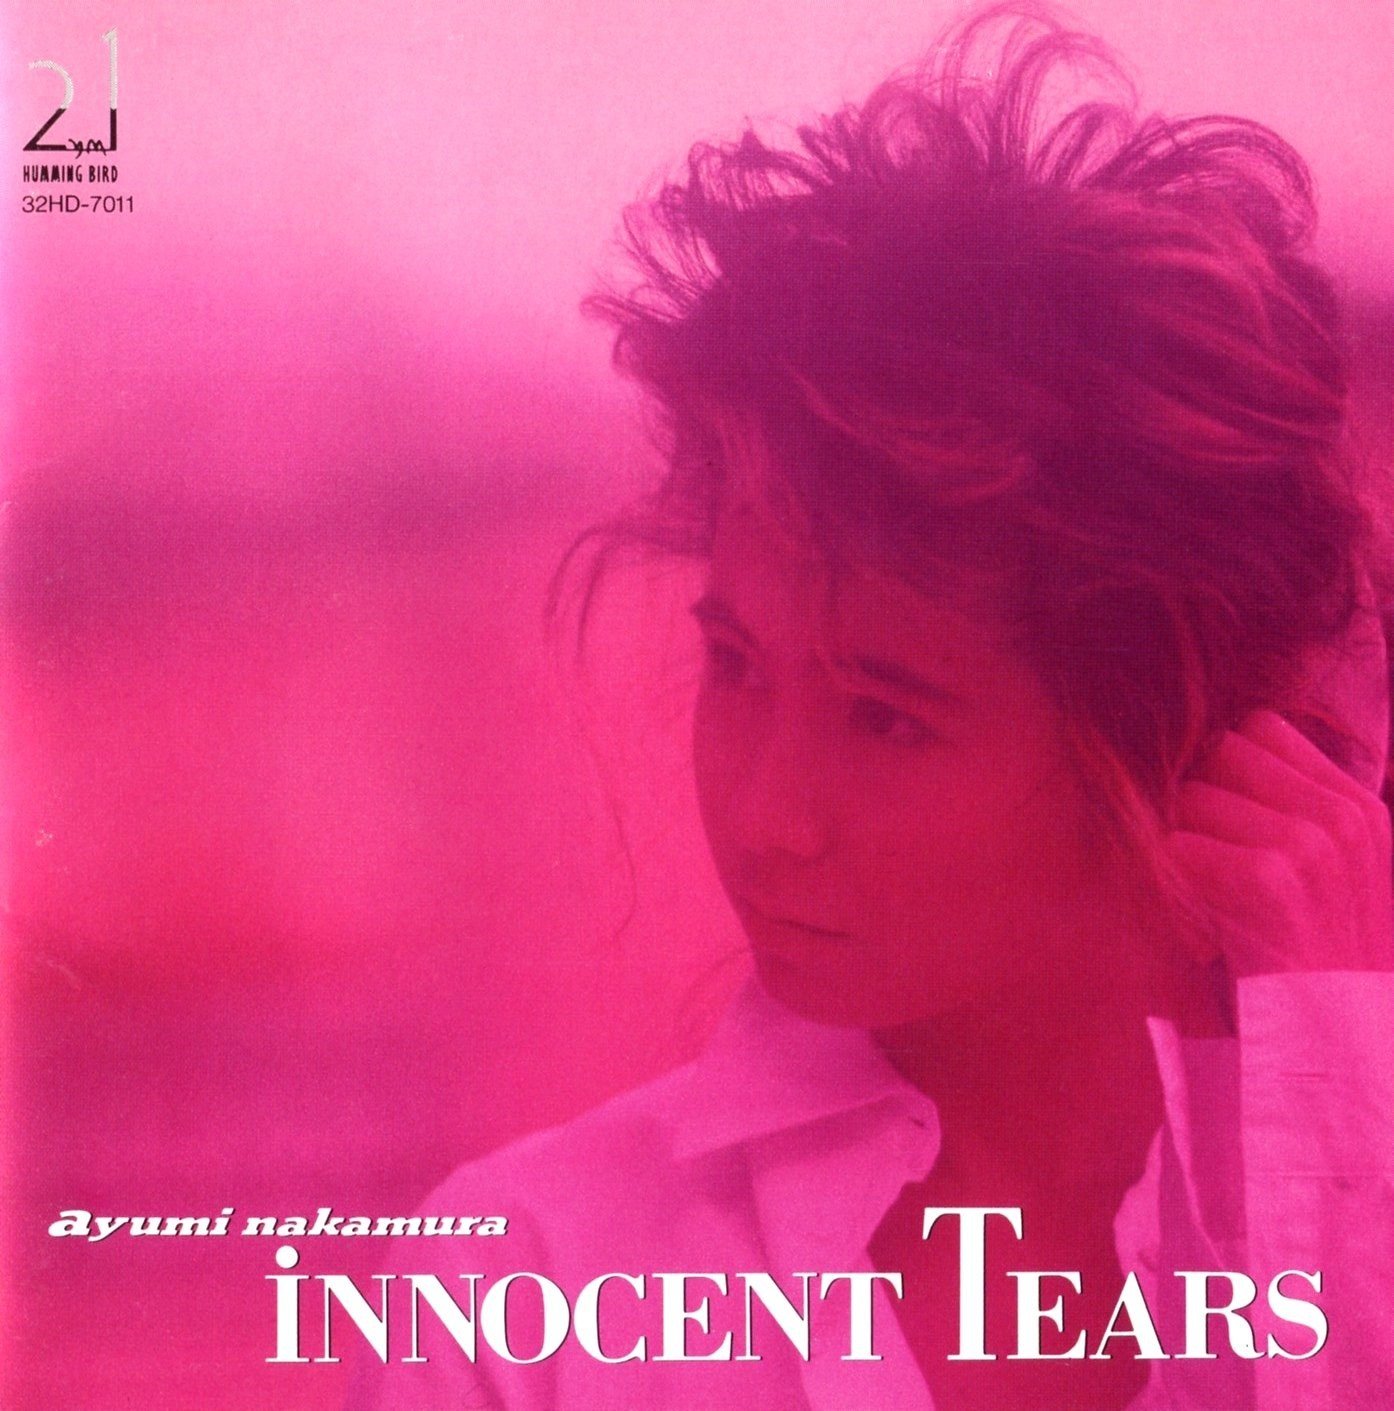 中村あゆみ (Ayumi Nakamura) - INNOCENT TEARS (35周年記念 2019 Remaster) [FLAC 24bit/48kHz]